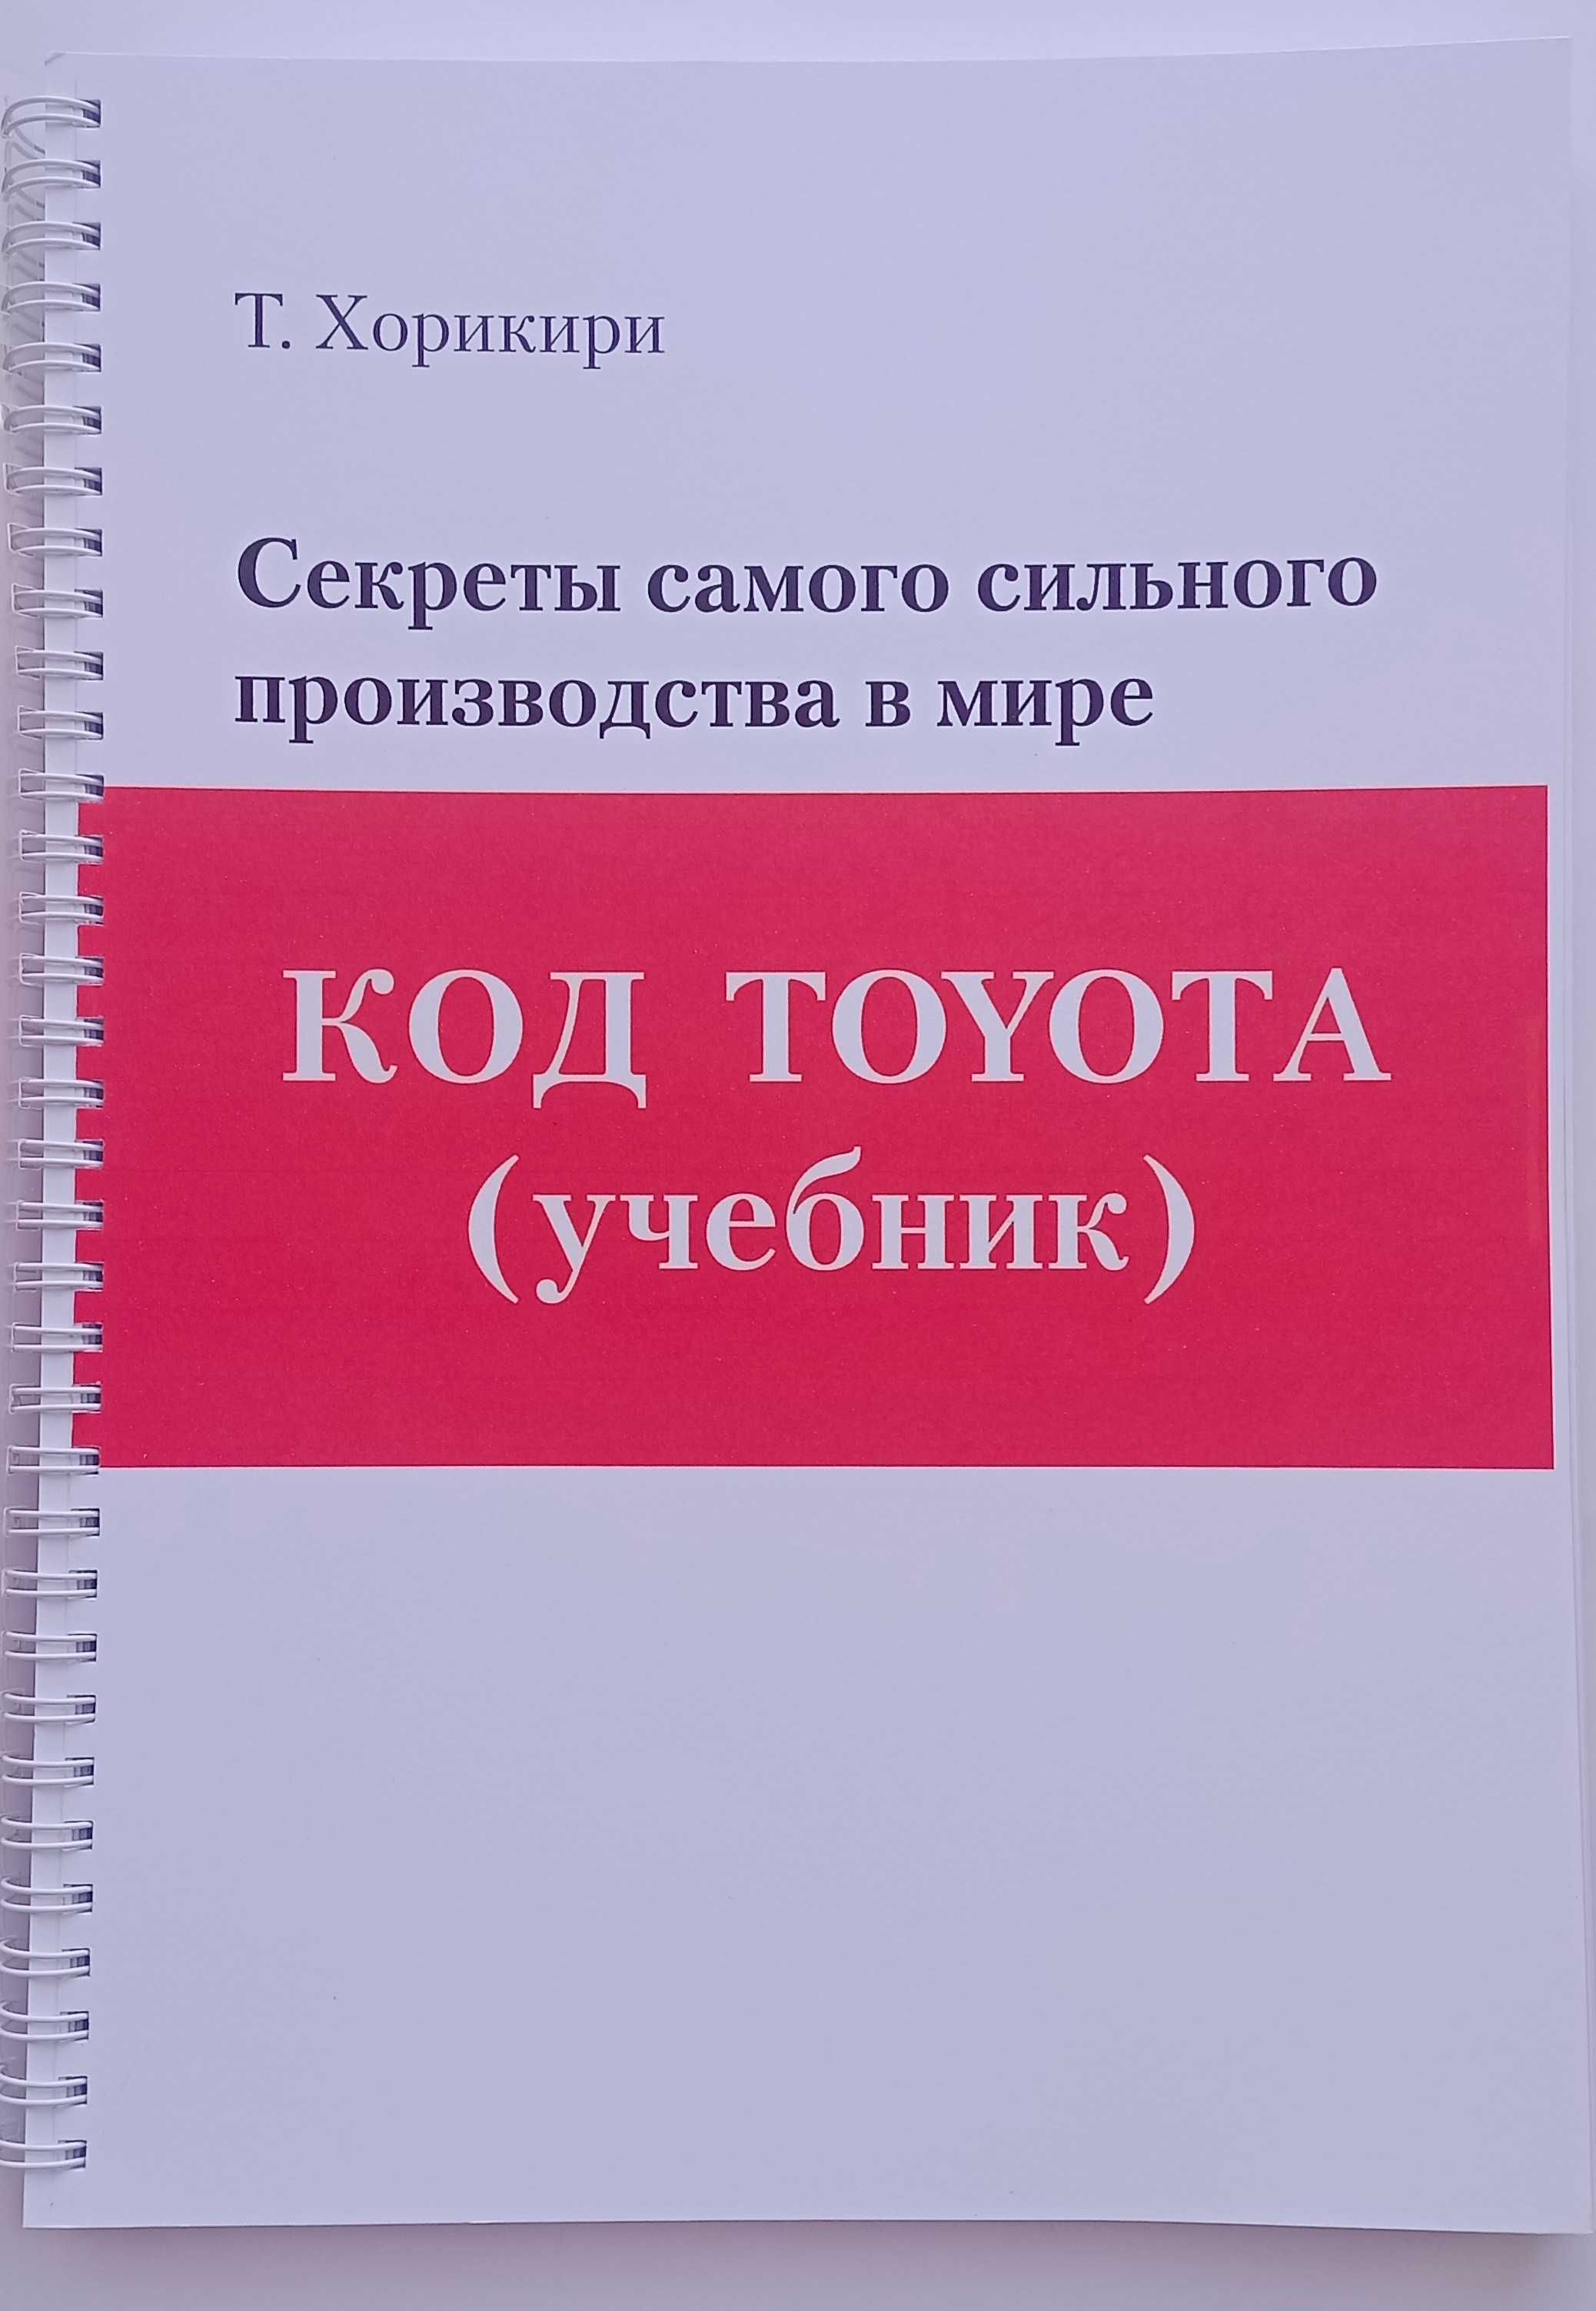 Книга "Код Тойота"